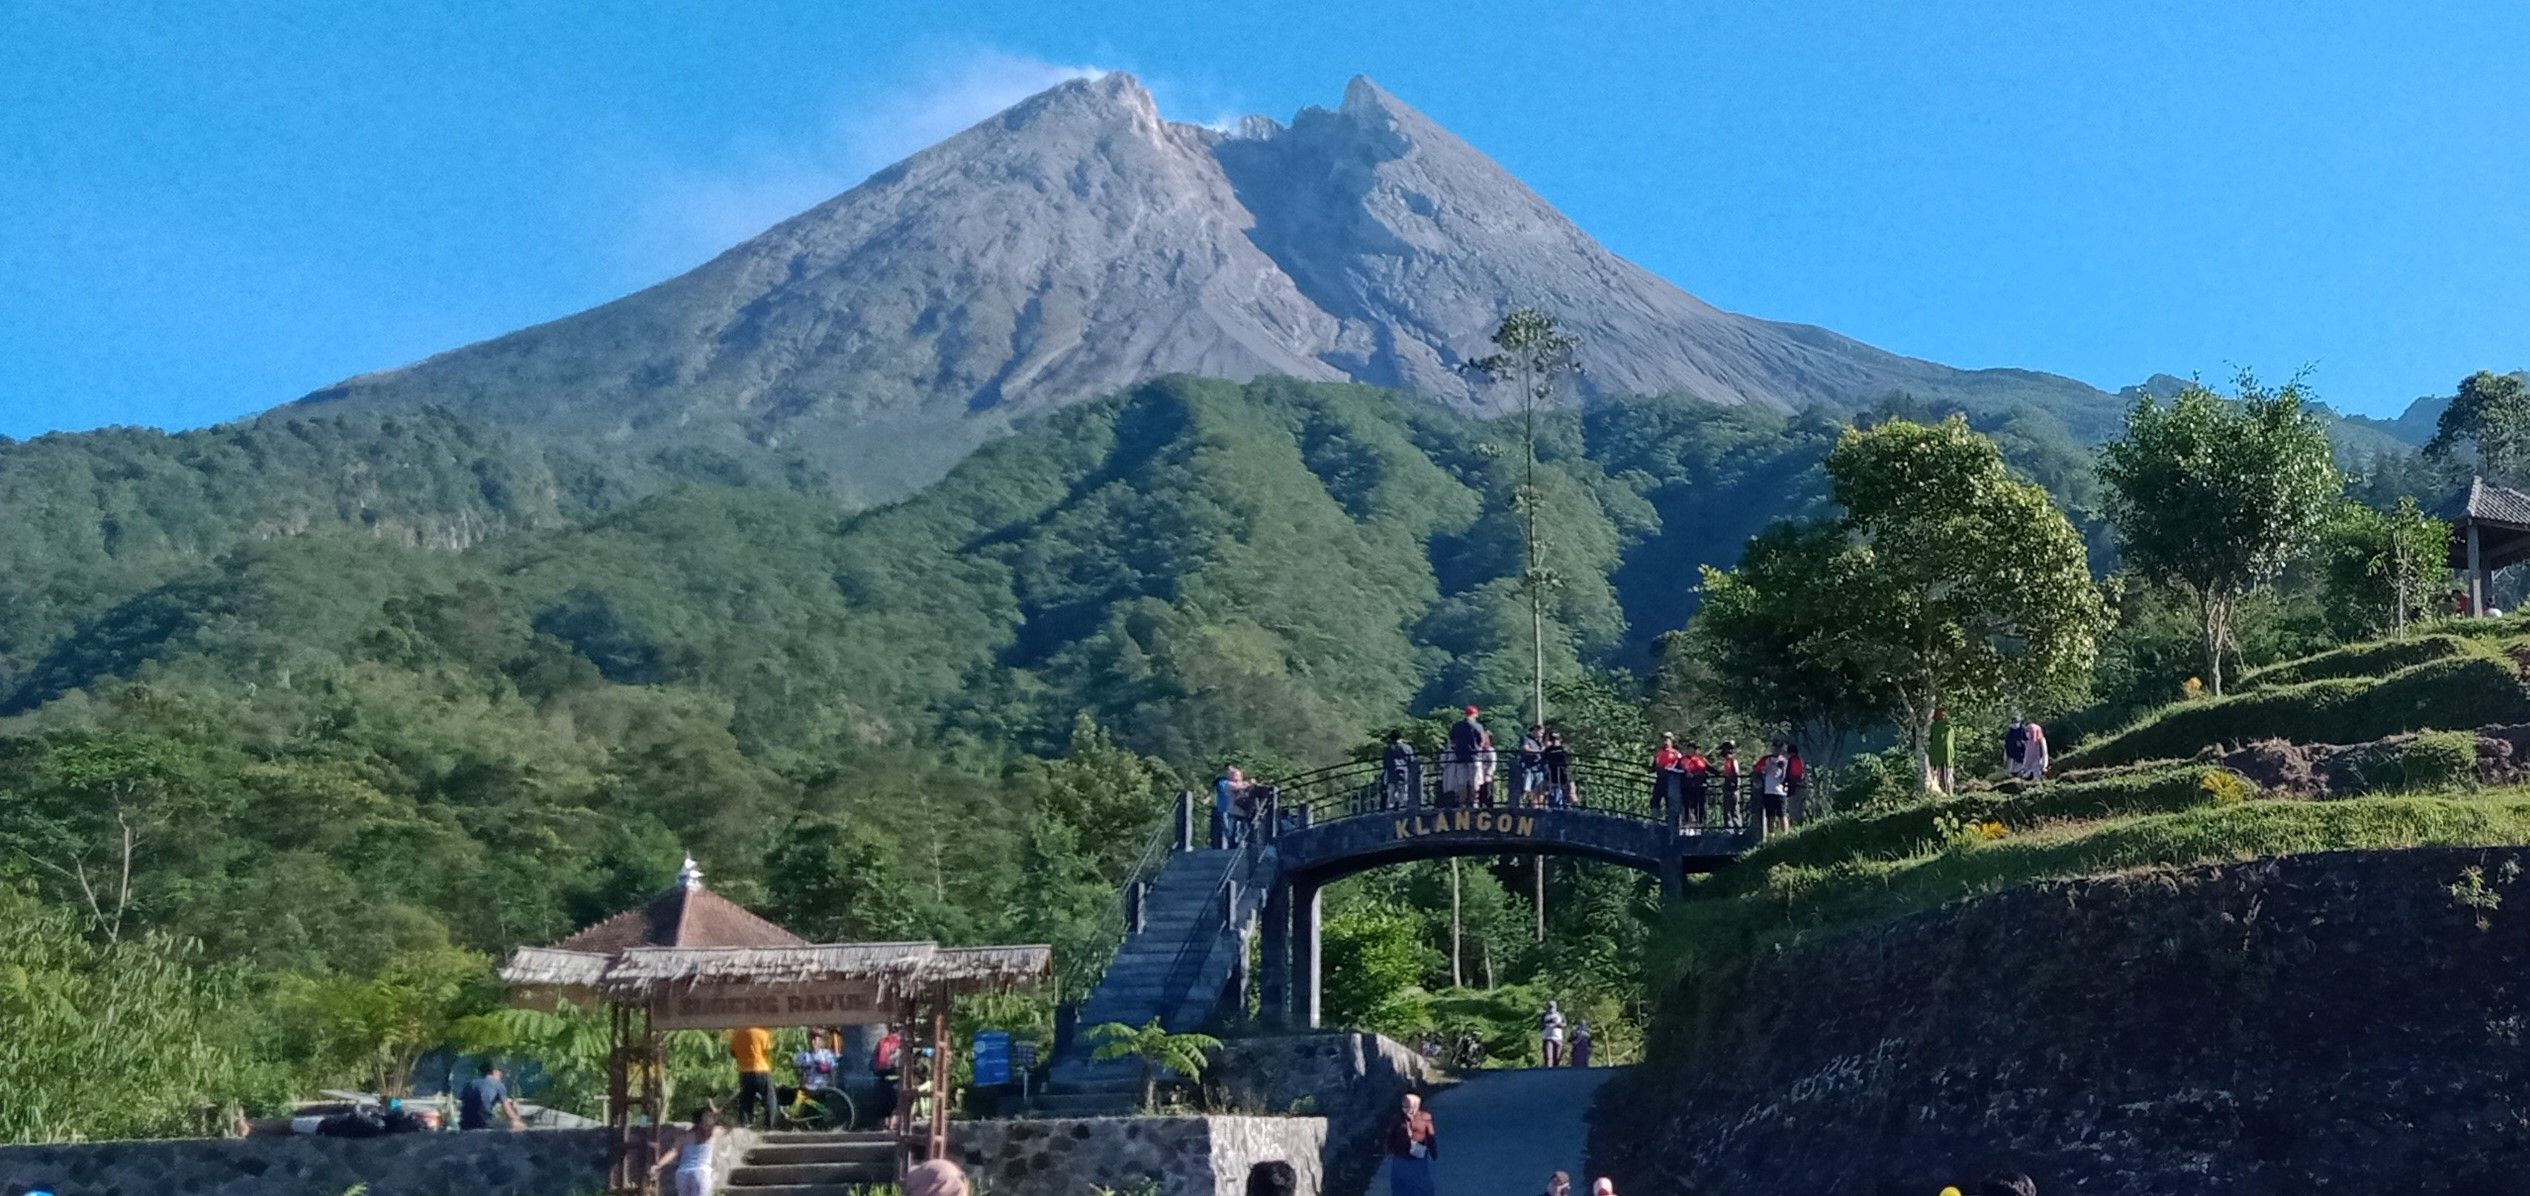 Status Siaga Gunung Merapi, Pemerintah Tutup 4 Wisata di